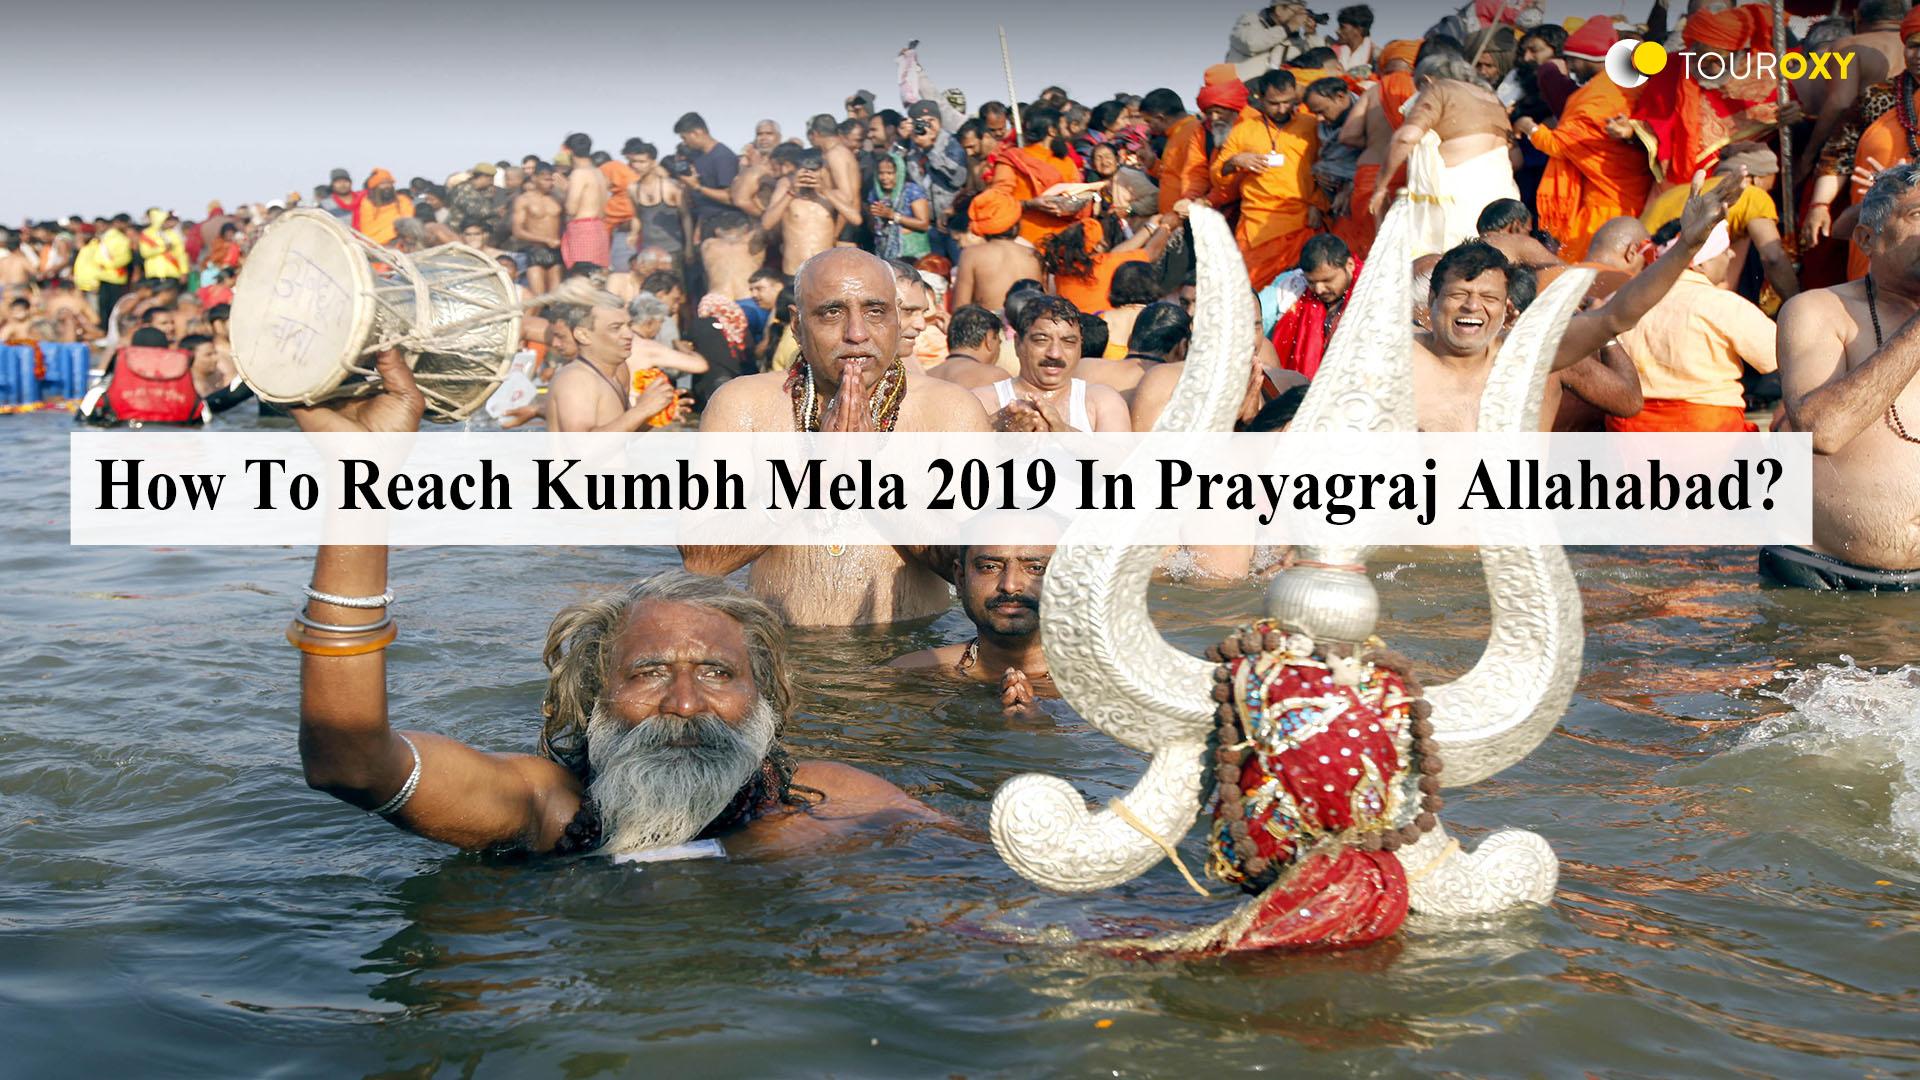 Kumbh Mela 2019 An Unforgettable Event